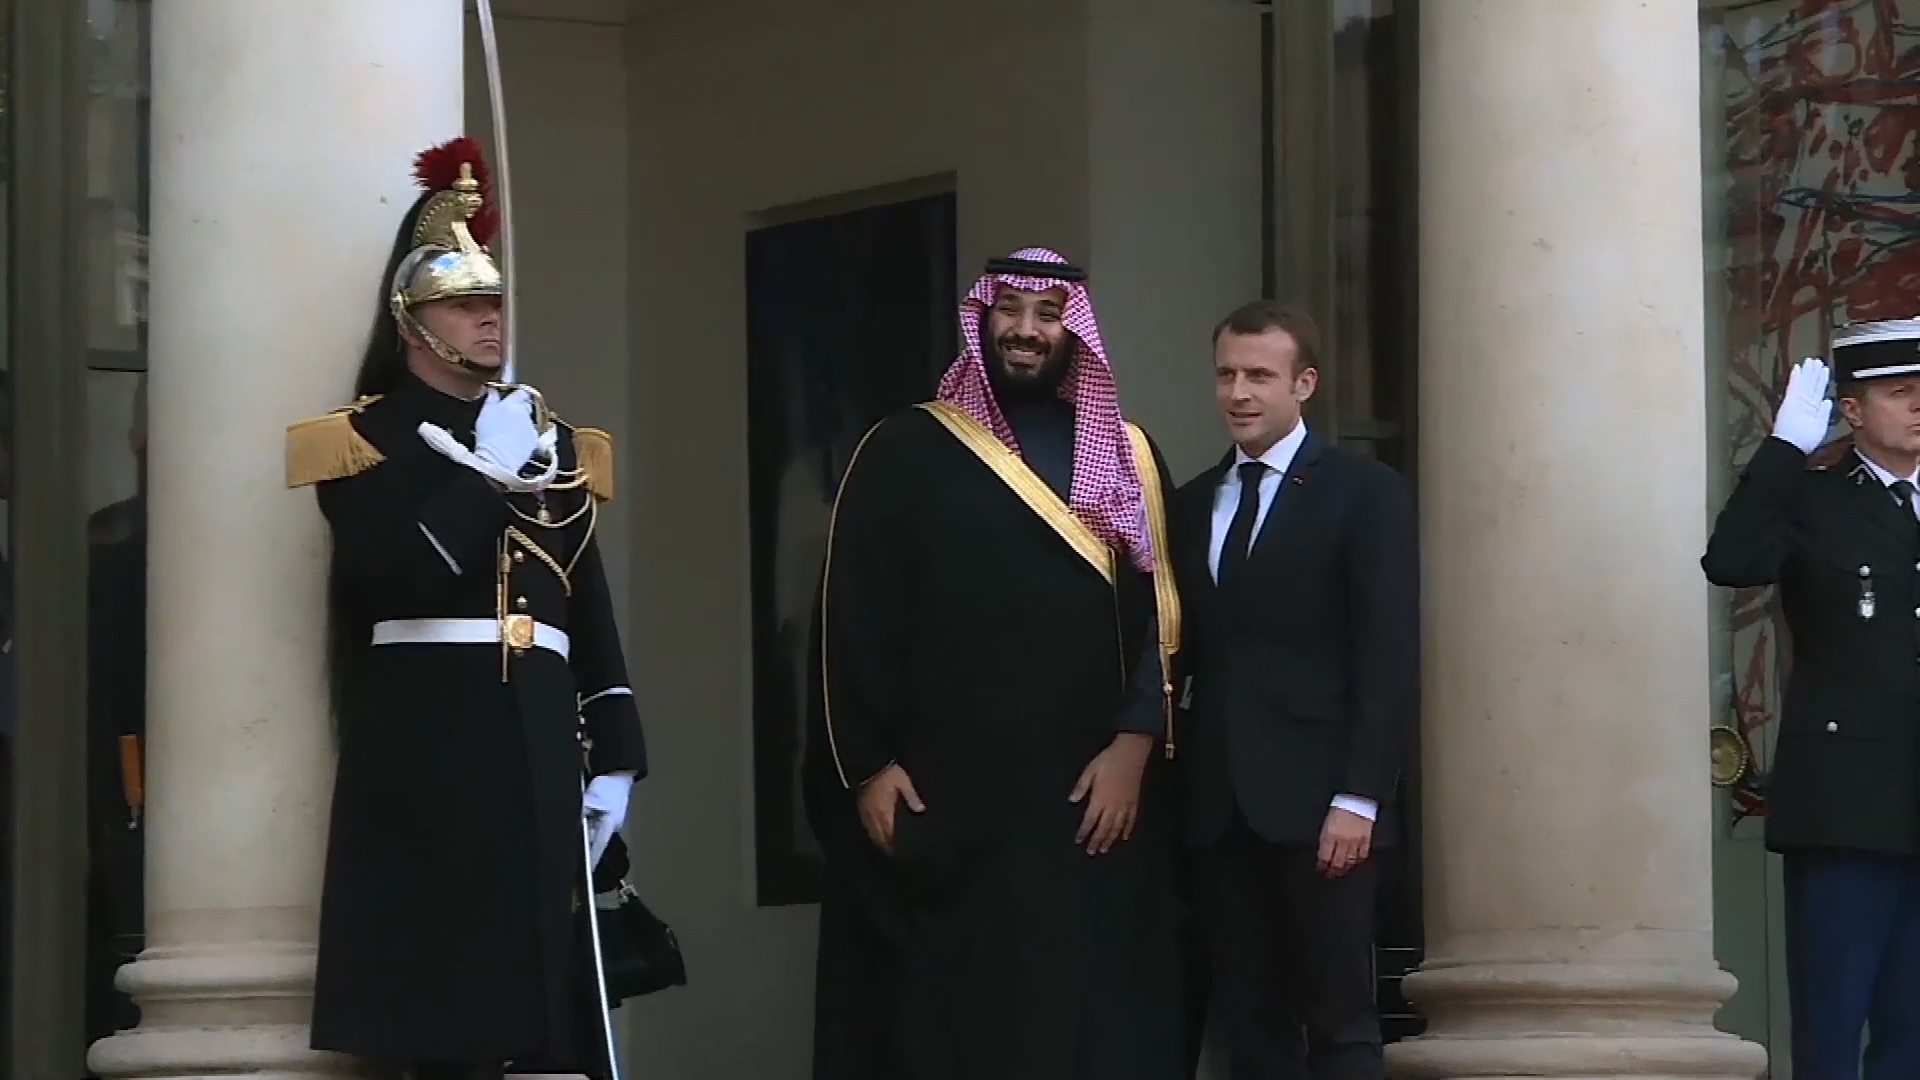 Mohamed Ben Salmane et Emmanuel Macron. Capture du film “Salvator Mundi : la stupéfiante affaire du dernier Vinci”, réalisé par Antoine Vitkine (2021).